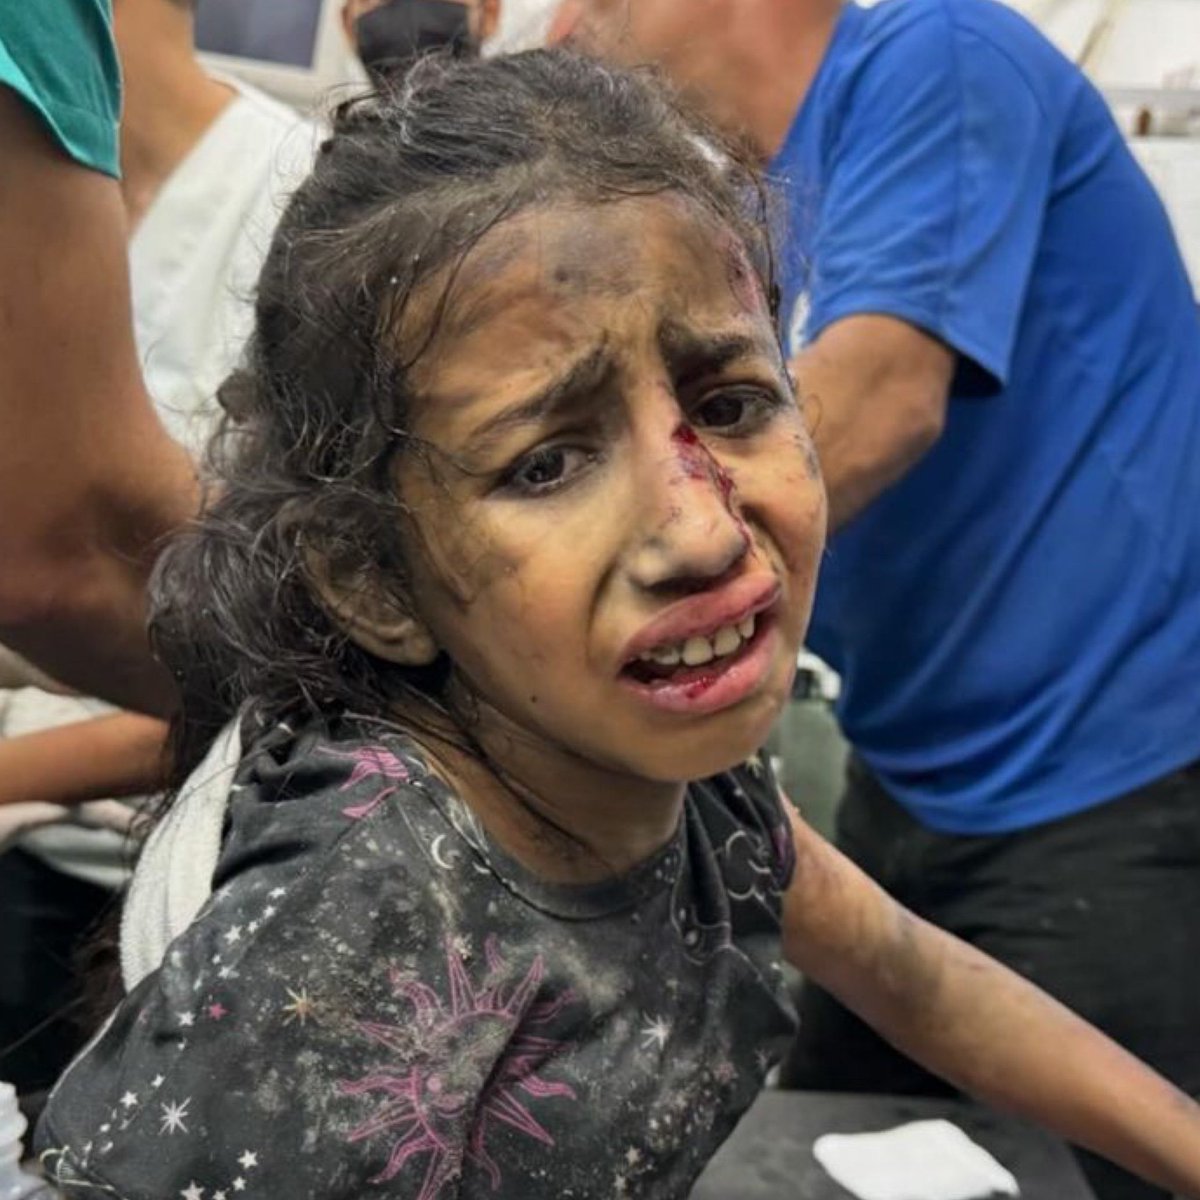 Çocuğumun bir damla gözyaşı için dünyayıyı yıkarım diyenler.
Gazze de gözyaşı akacak çocuk bırakmadılar, acıları büyüdükçe gözyaşlarını  içine akıtan çocukları görüyor musunuz.. 

#Hamas #Netanyahu
#Rafah #öğretmen
#Israel #GazaGenocide